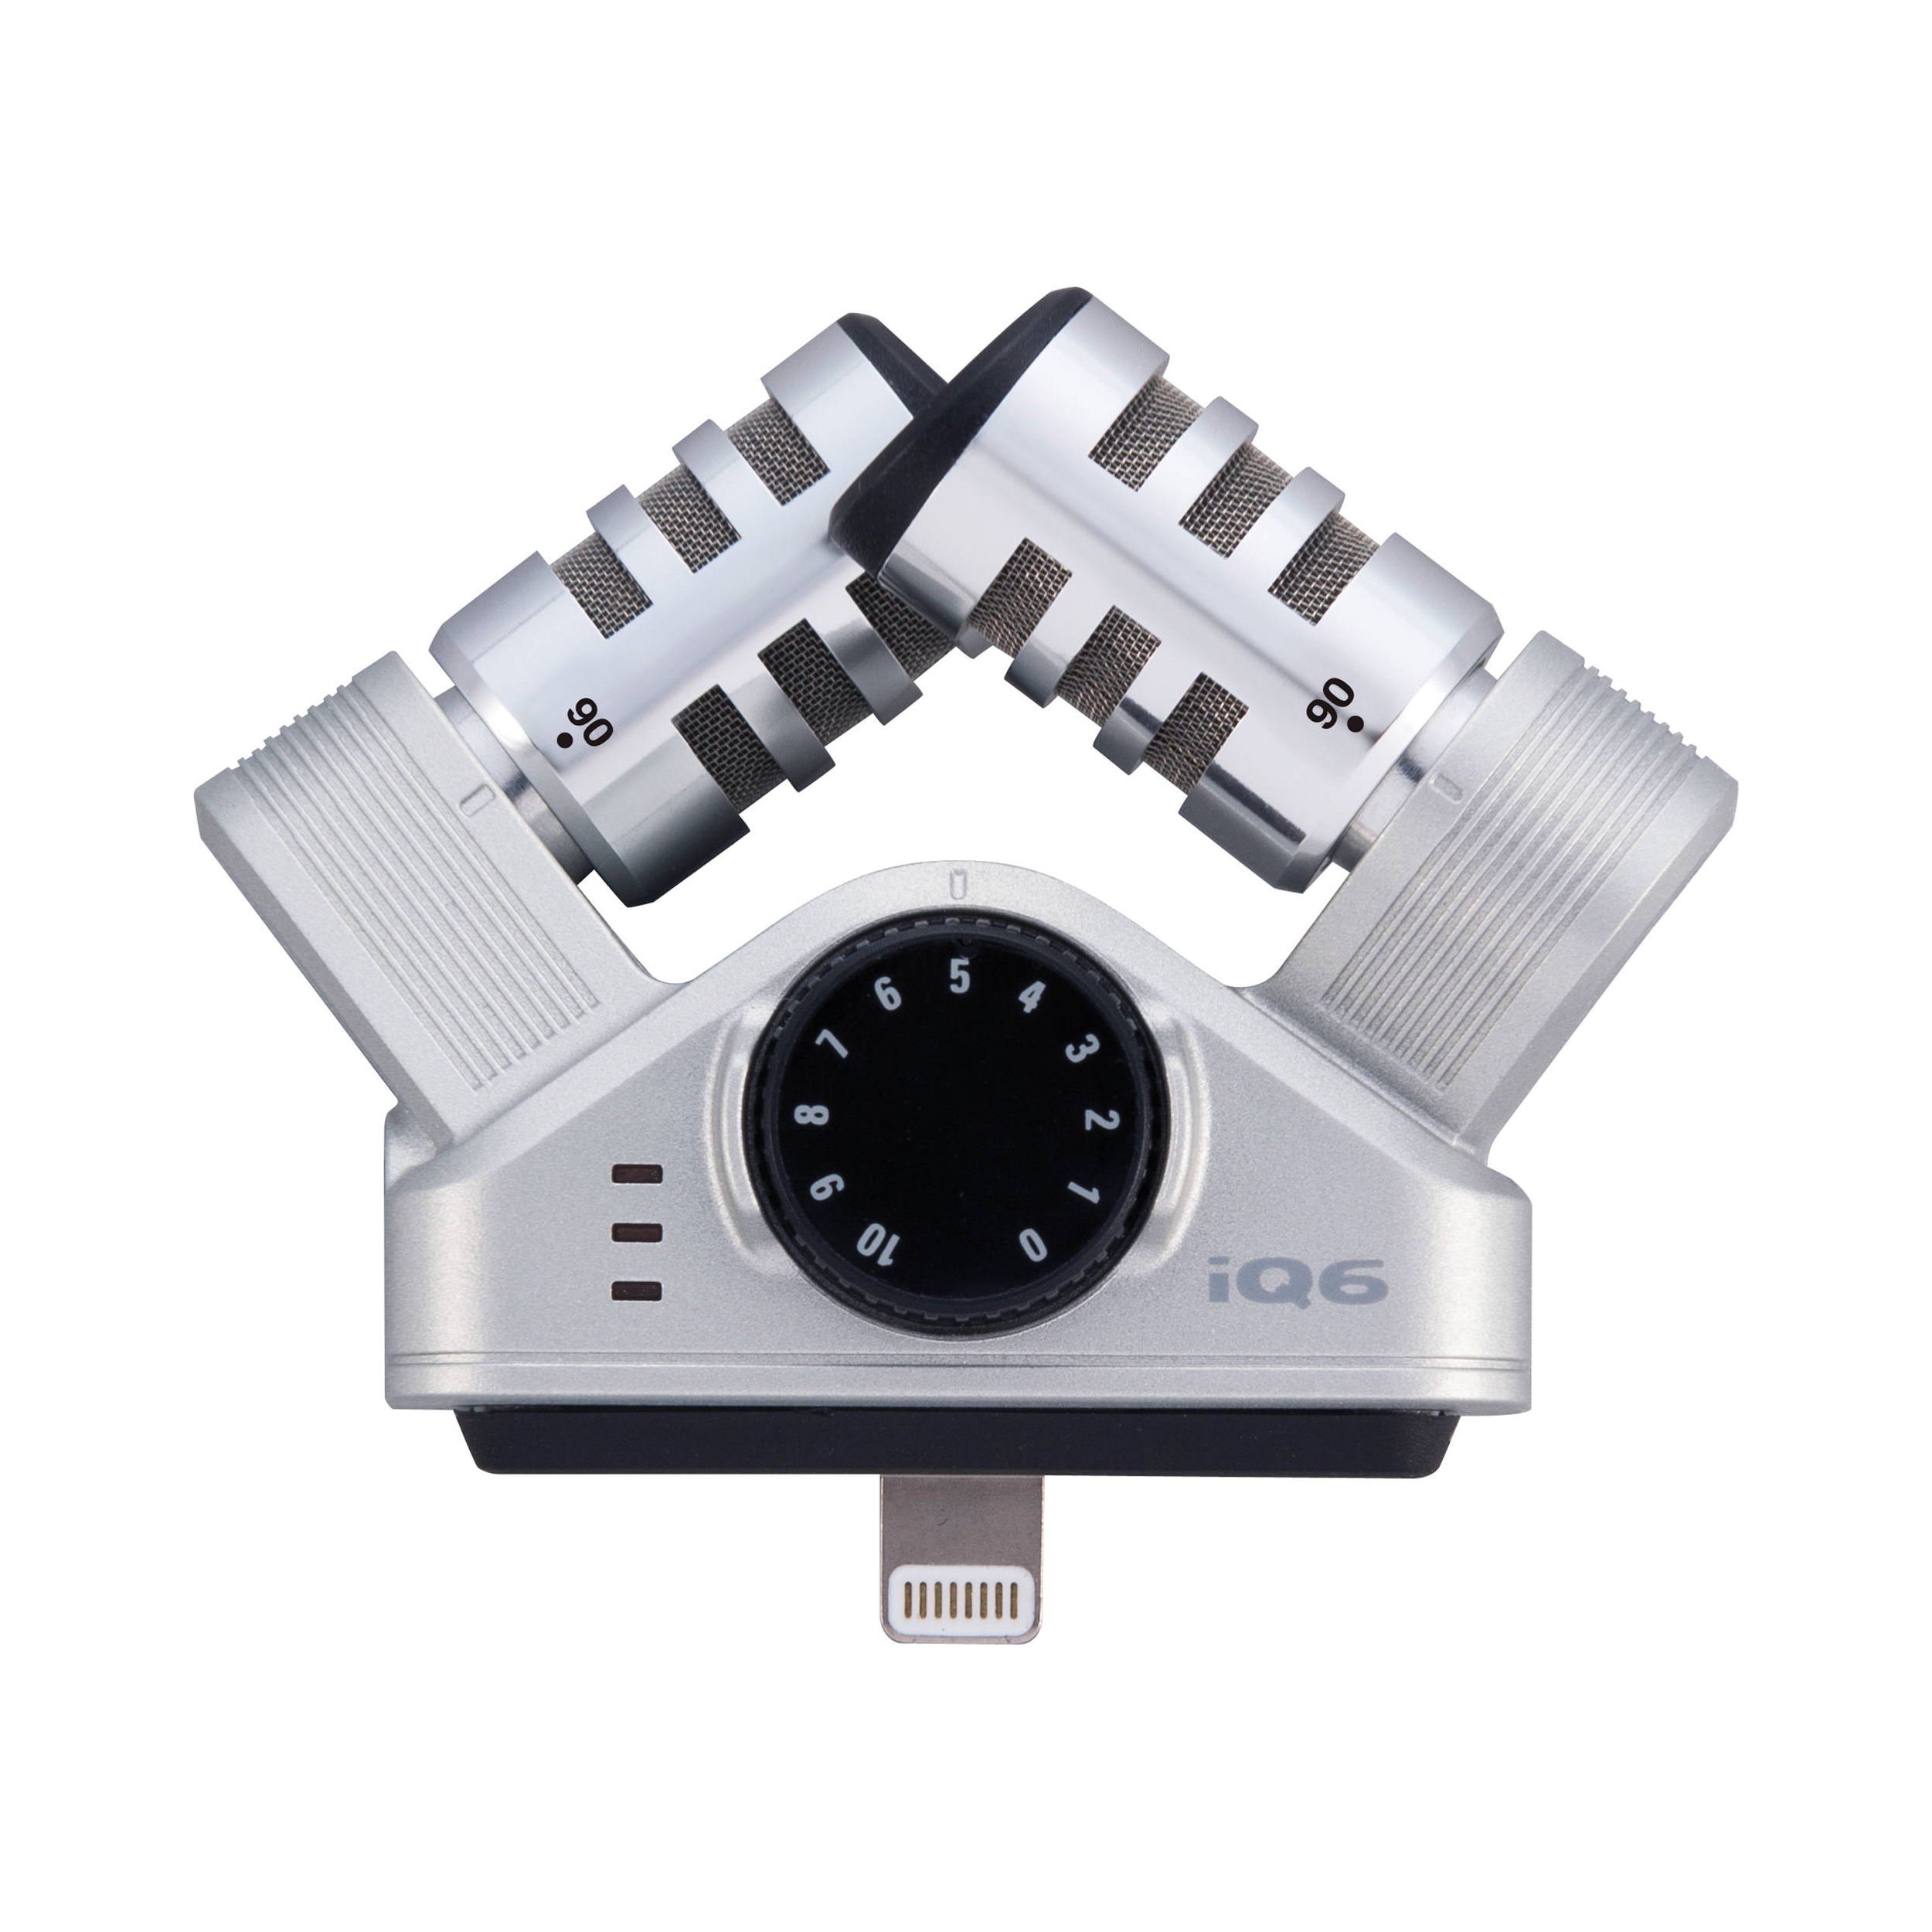 Zoom IQ6 Stéréo X / Y Microphone pour les appareils iOS avec connecteur Lightning